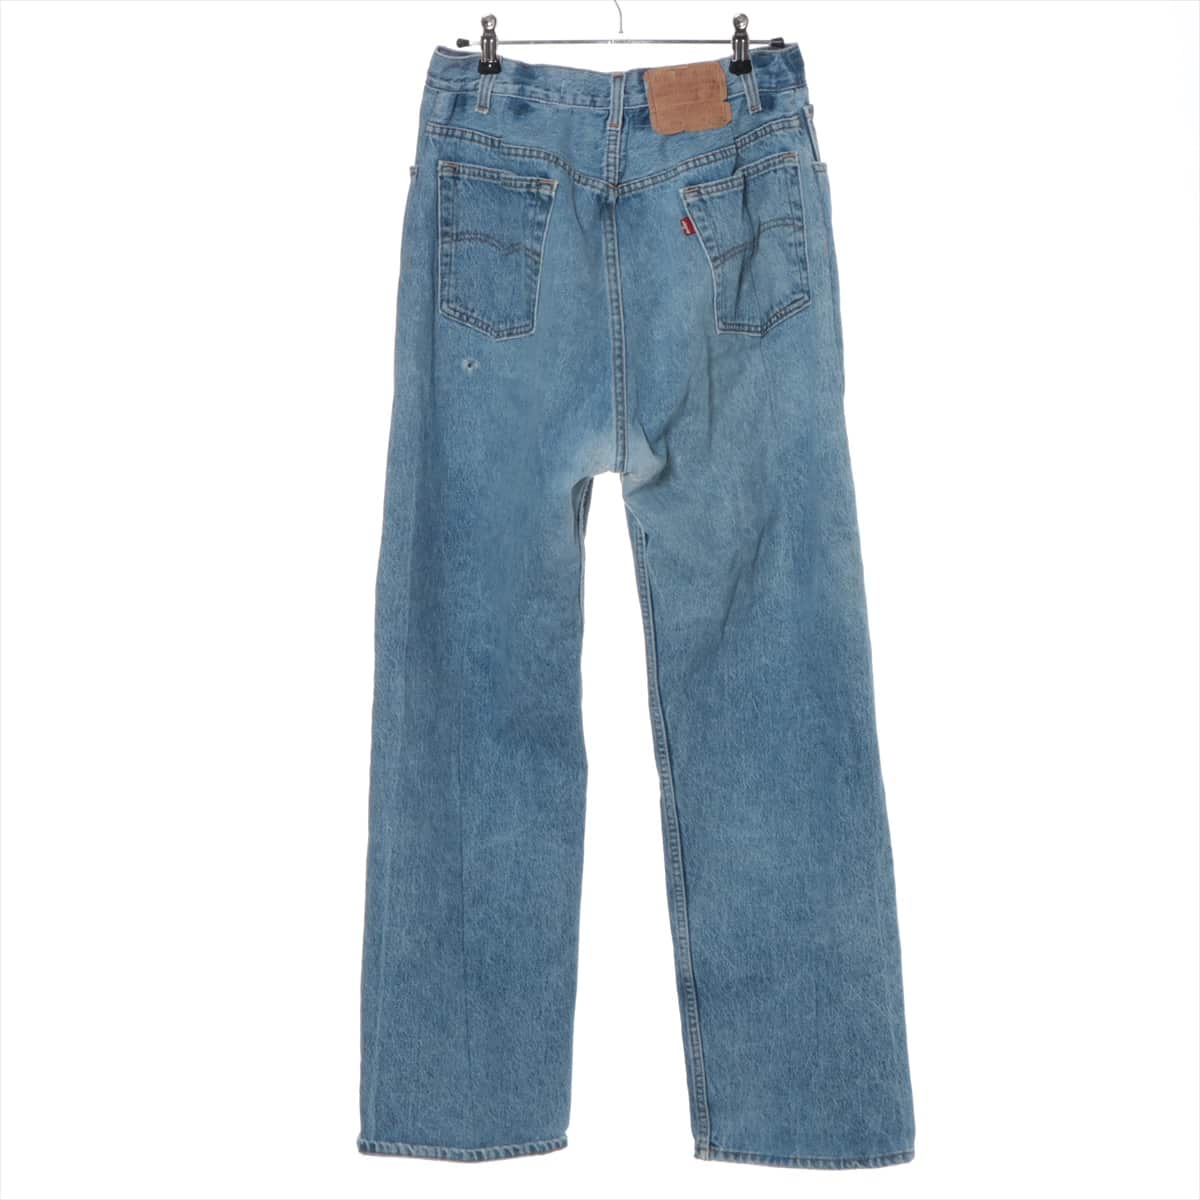 Off-white x Levi's Cotton Denim pants 25 Men's Blue  restructured